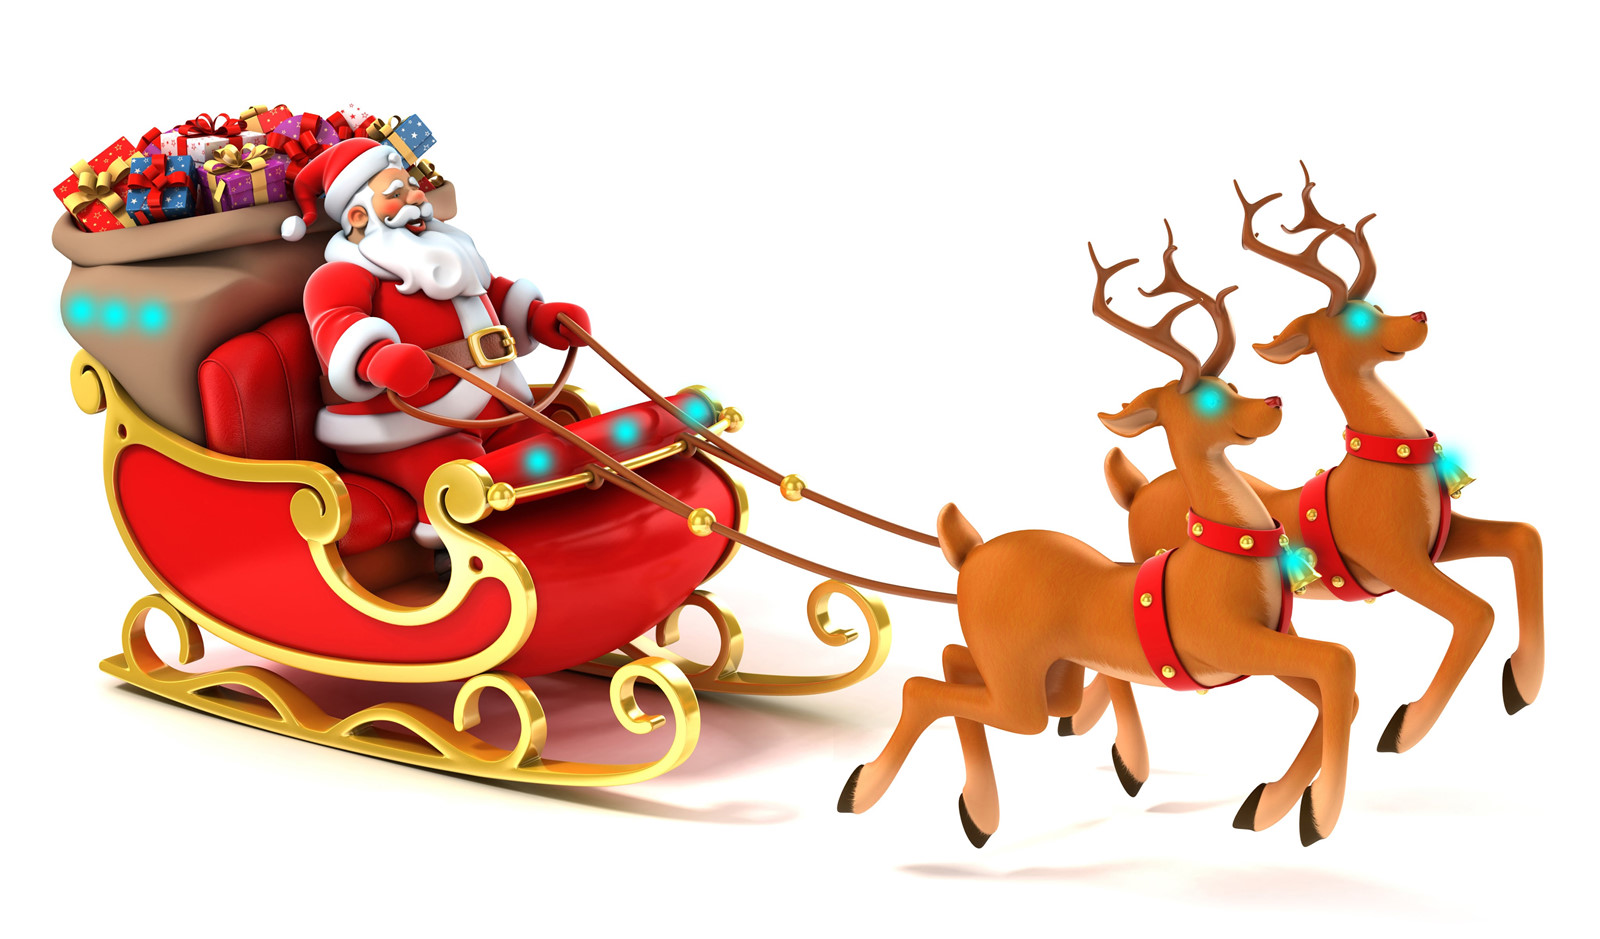 Ông già Noel đã quay trở lại trung tâm thành phố với những món quà thật đặc biệt và ý nghĩa cho mọi người. Hãy cùng đến và cảm nhận không khí Giáng sinh ấm áp và hạnh phúc tại địa điểm ông già Noel này.